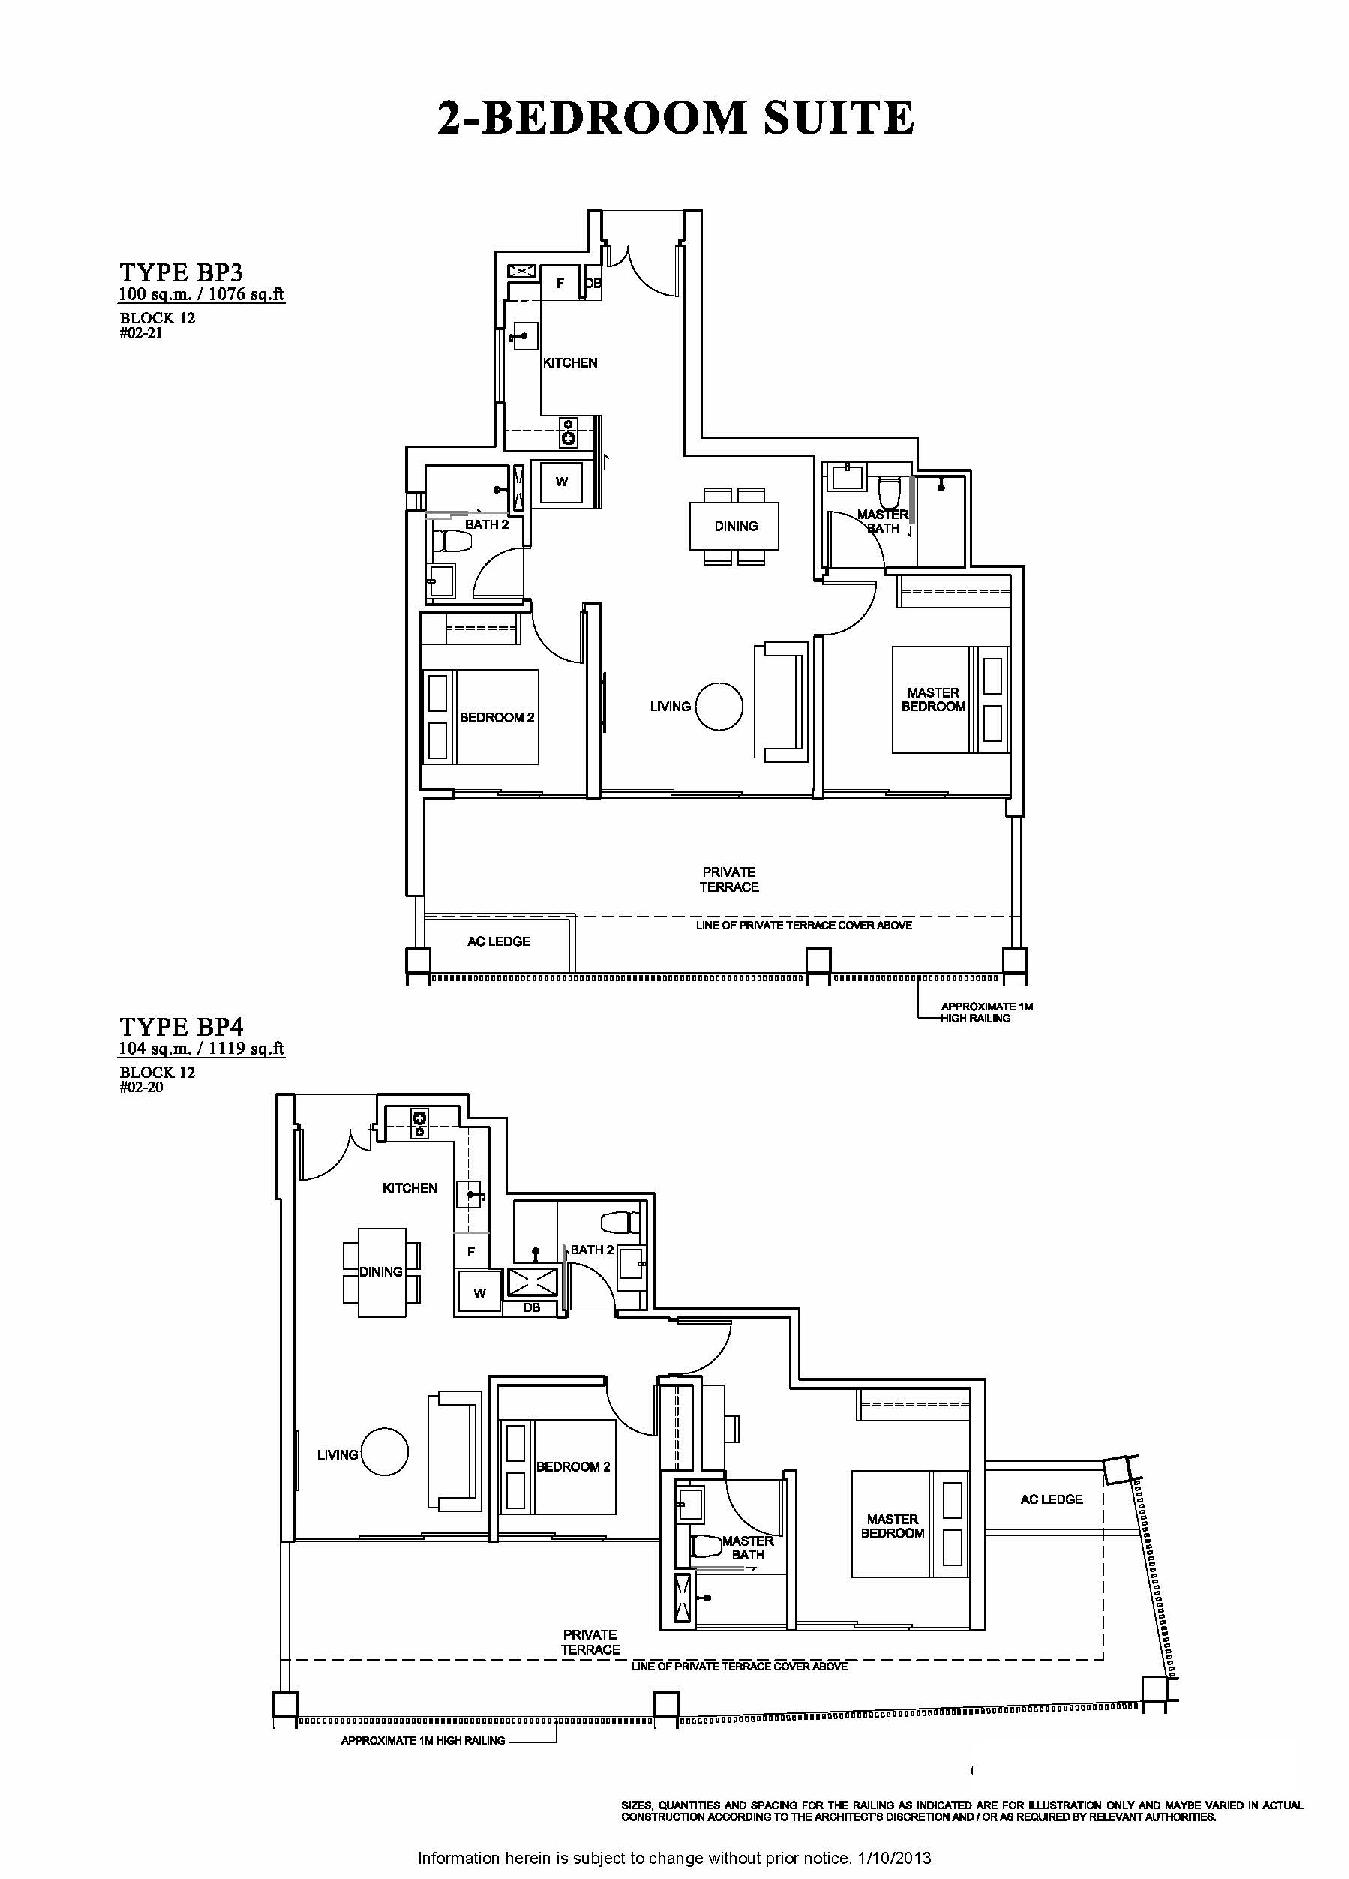 The Venue Residences 2 Bedroom Suite Floor Plan Type BP3 and BP4